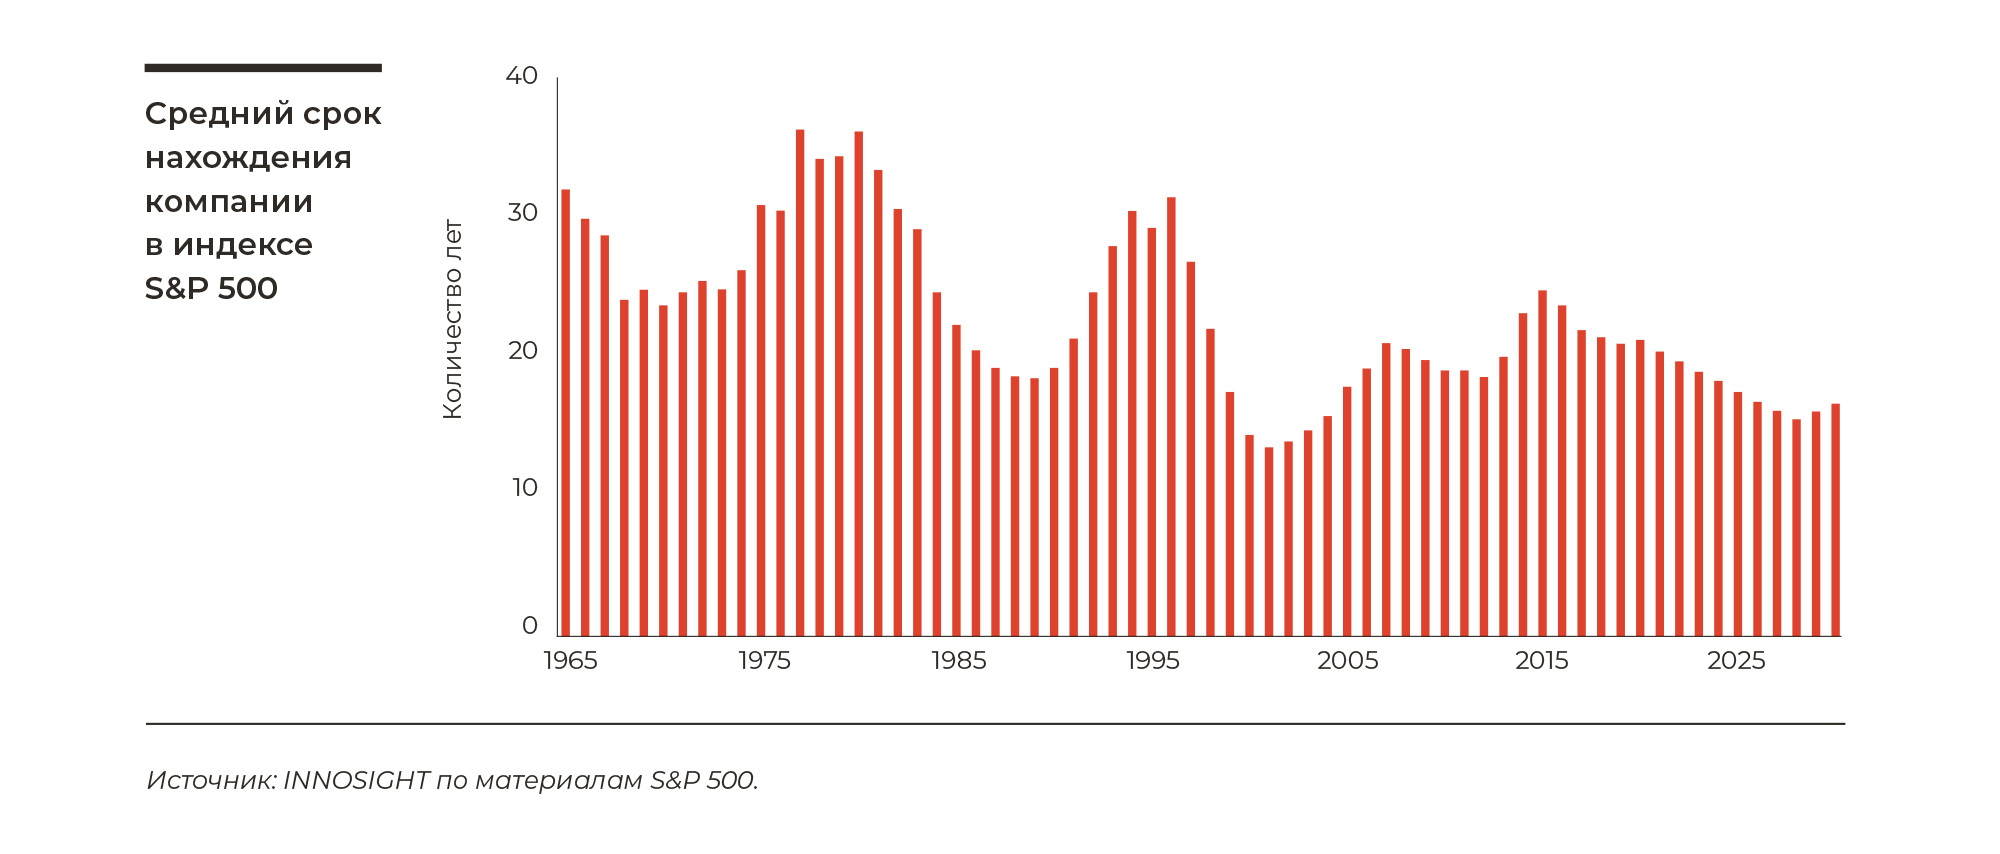 Средний срок нахождения компании в индексе S&P 500